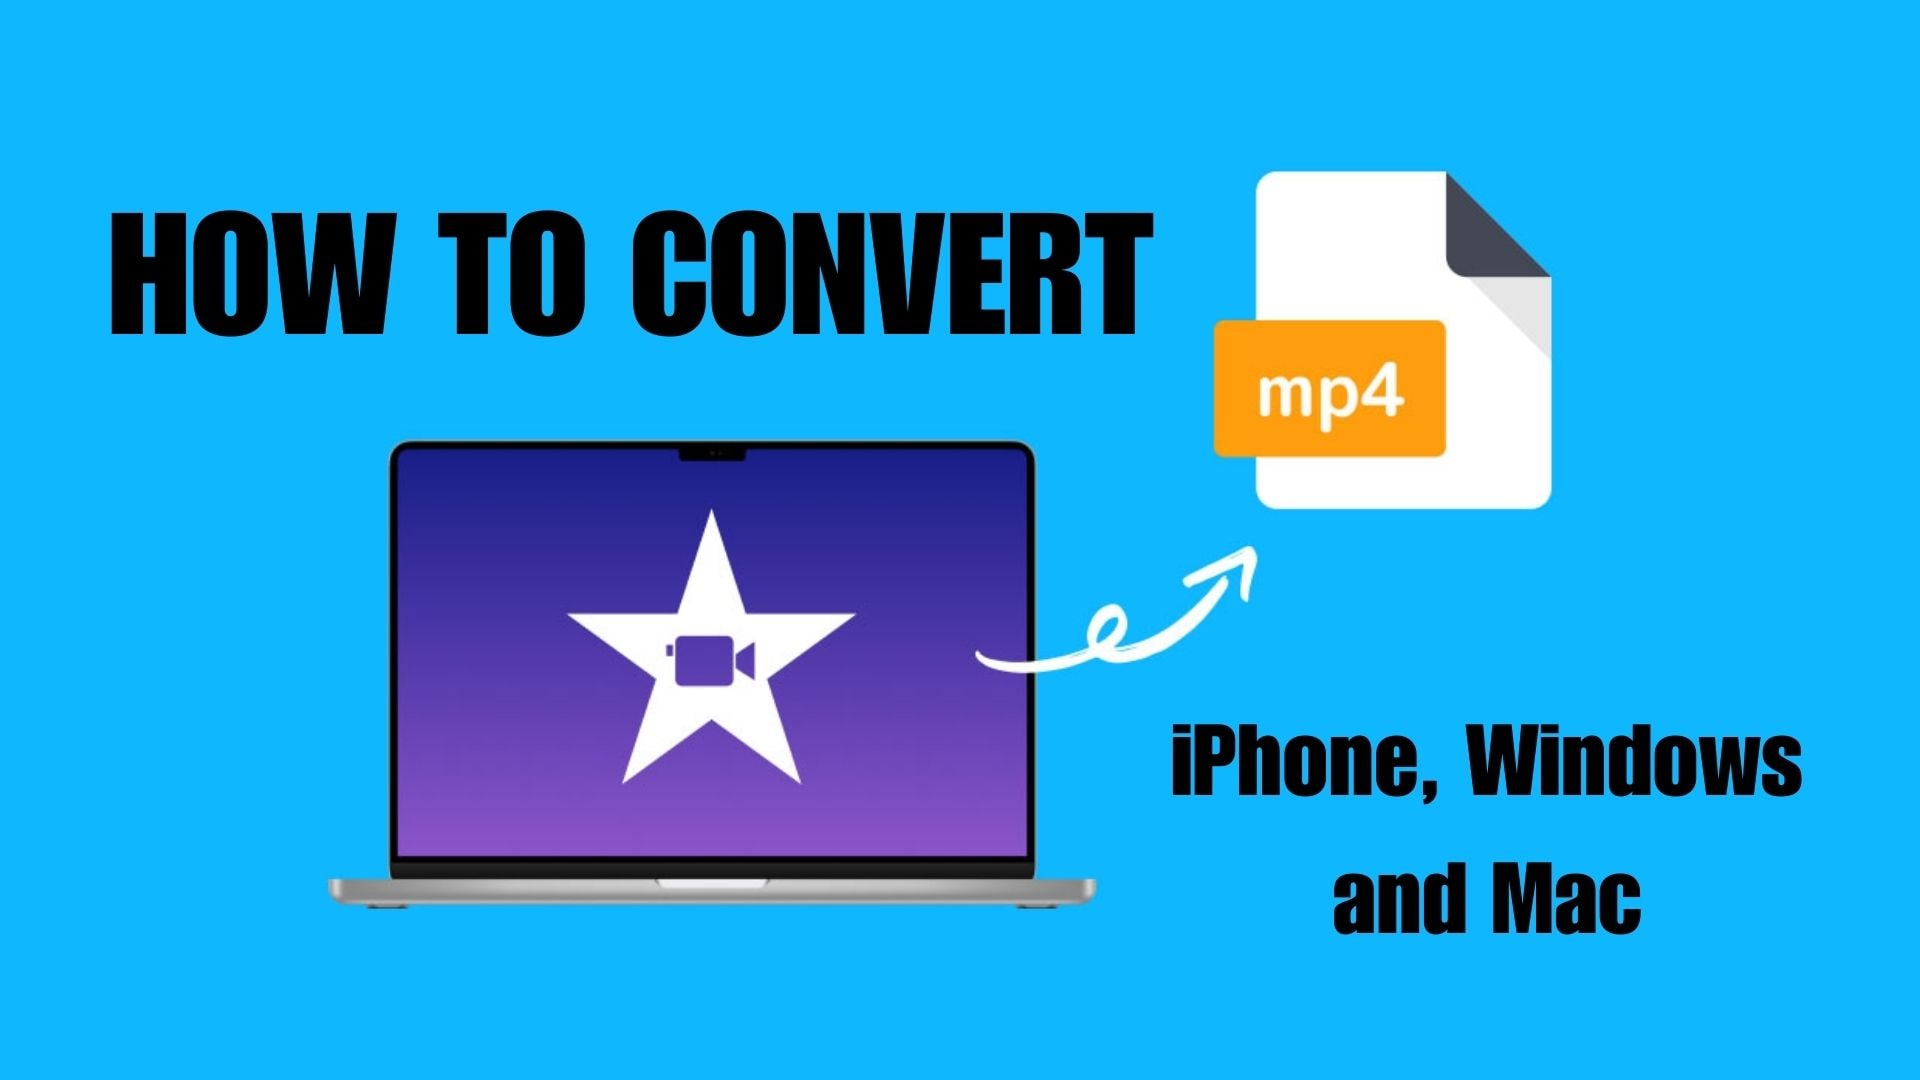 Modi efficaci per convertire iMovie in MP4 su iPhone, Windows e Mac